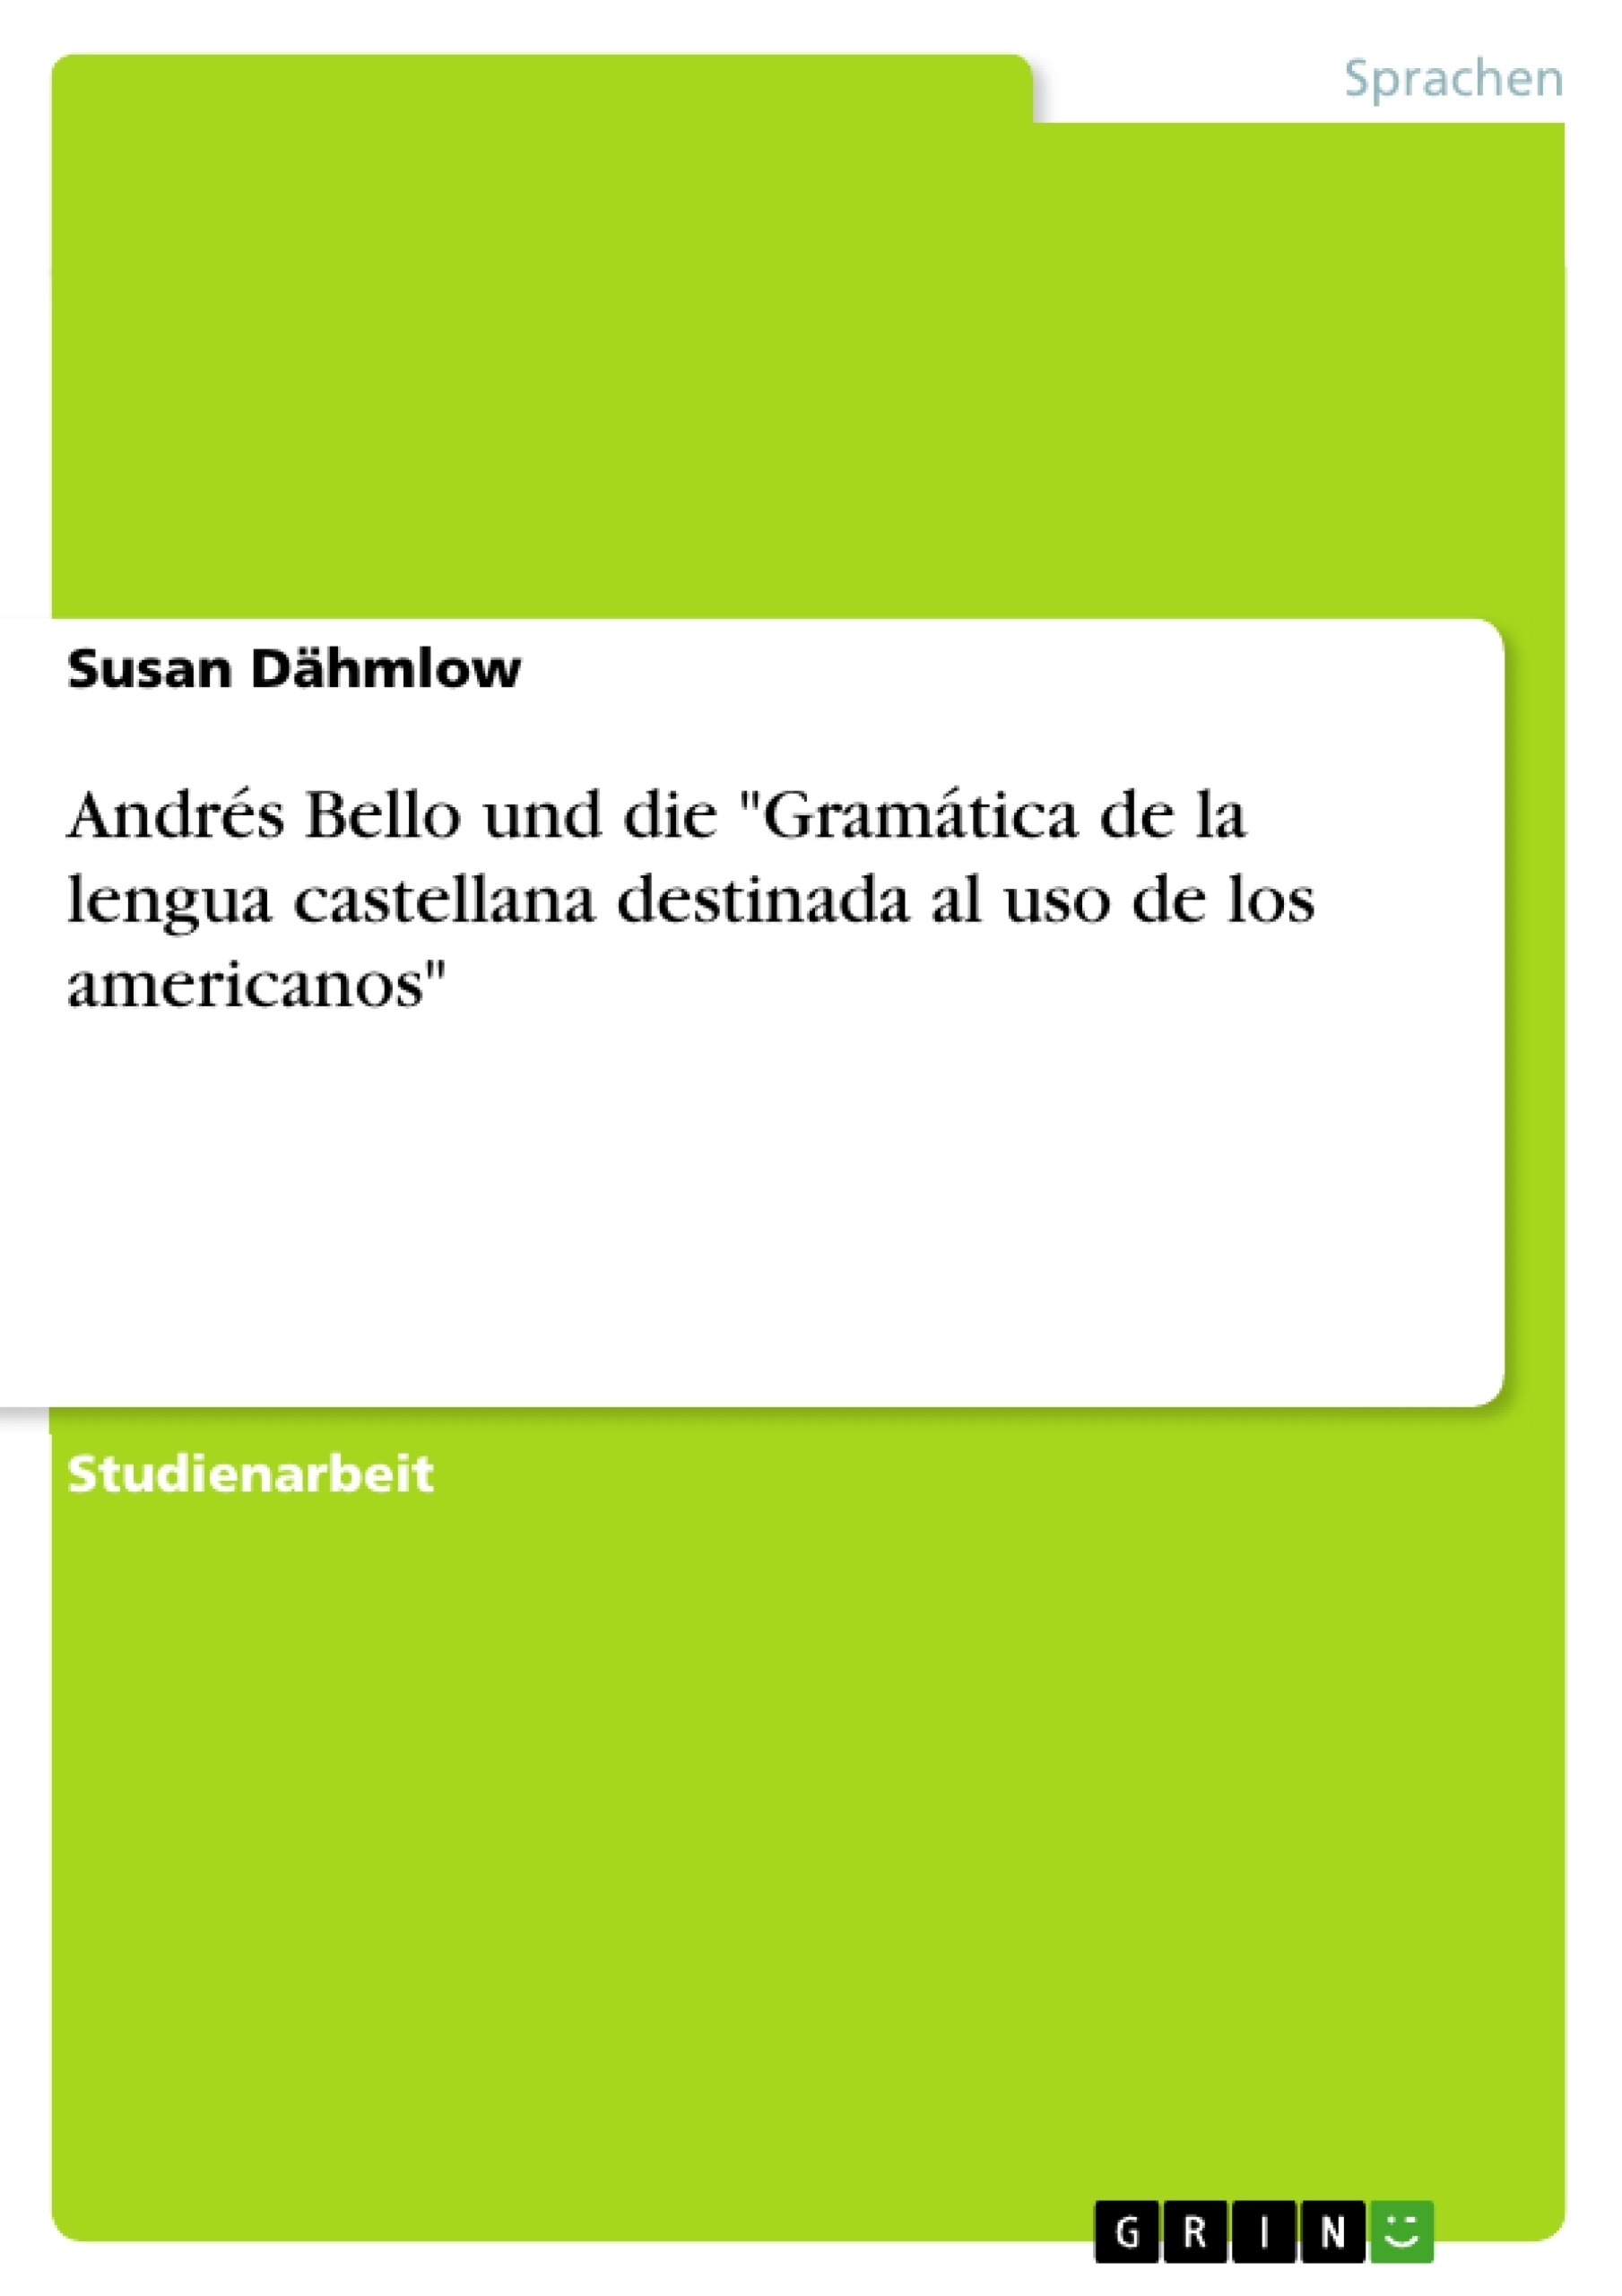 Titel: Andrés Bello und die "Gramática de la lengua castellana destinada al uso de los americanos"